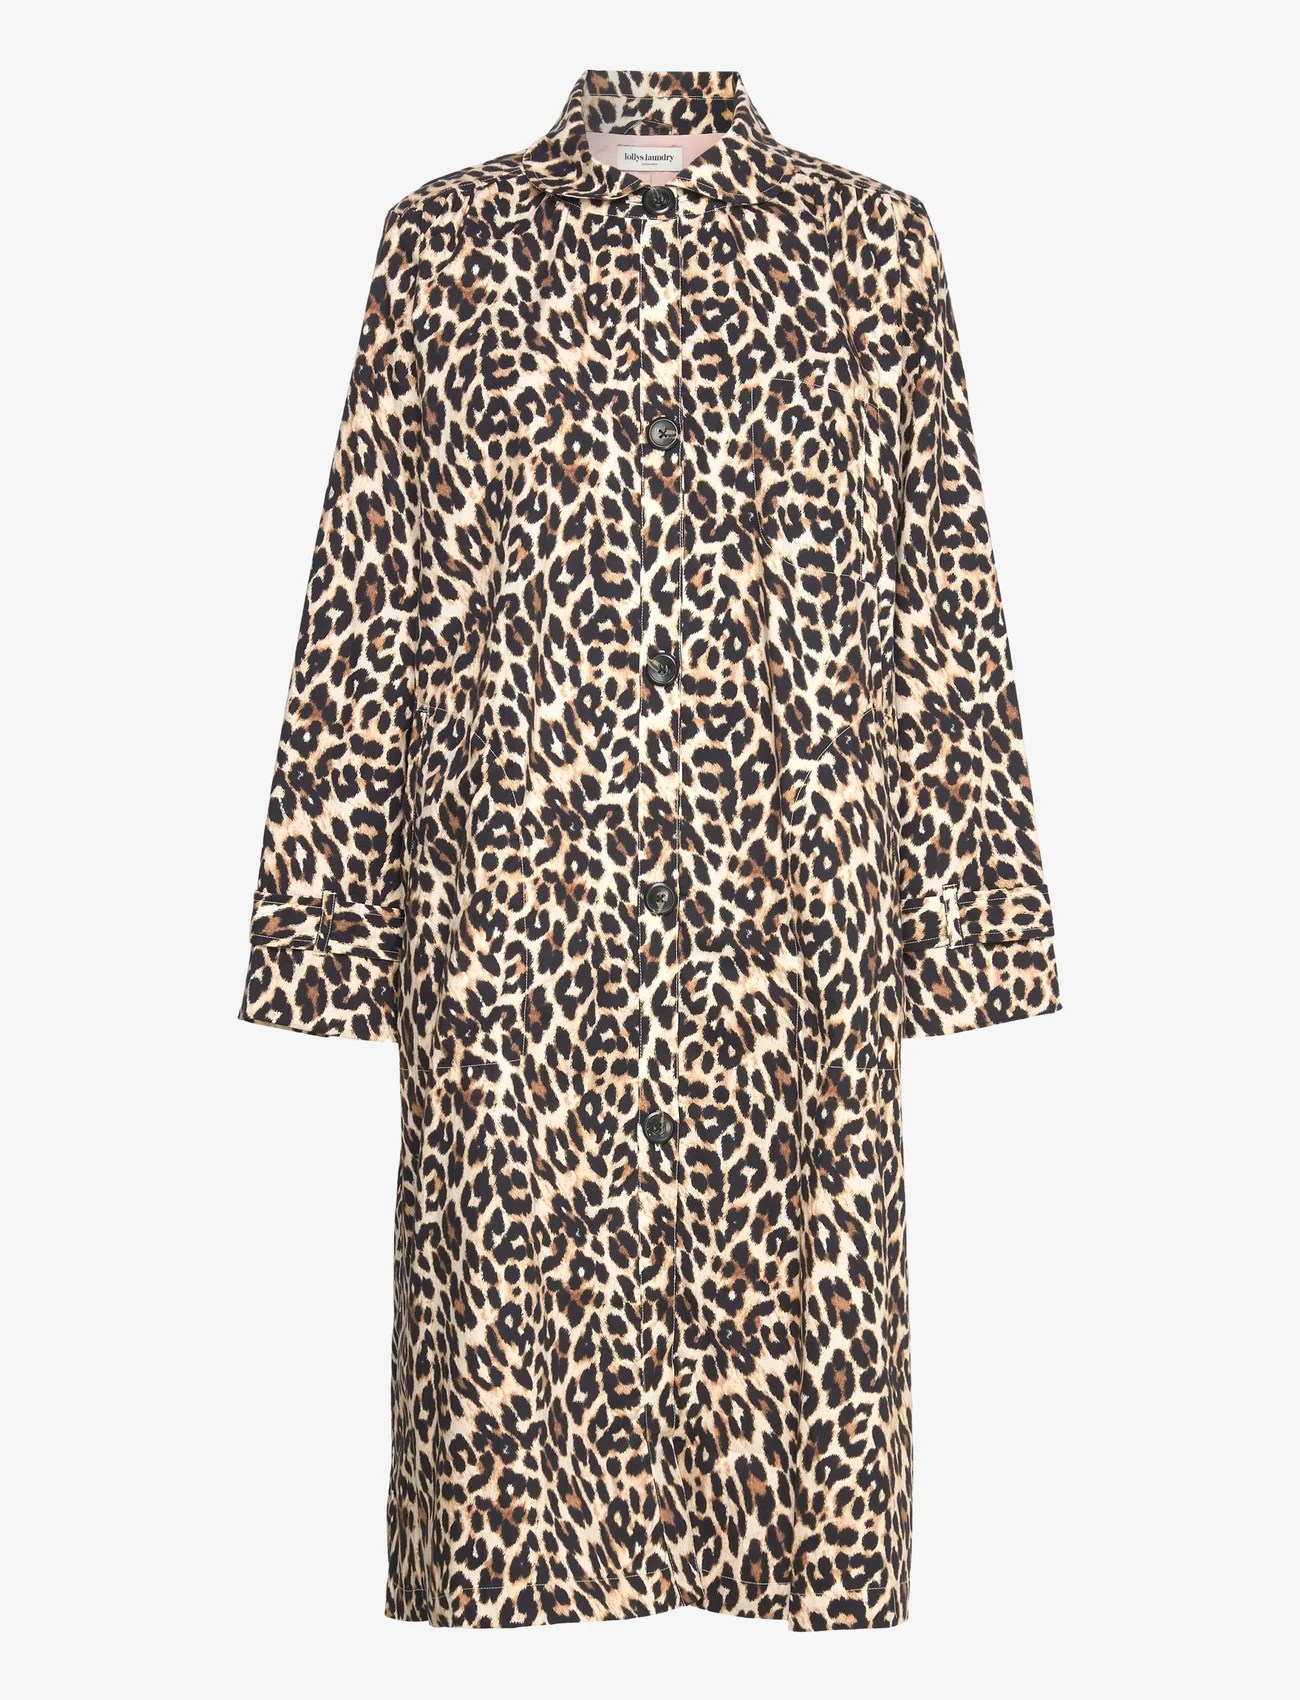 Lollys Laundry - Mikala Jacket - leopard print - 0